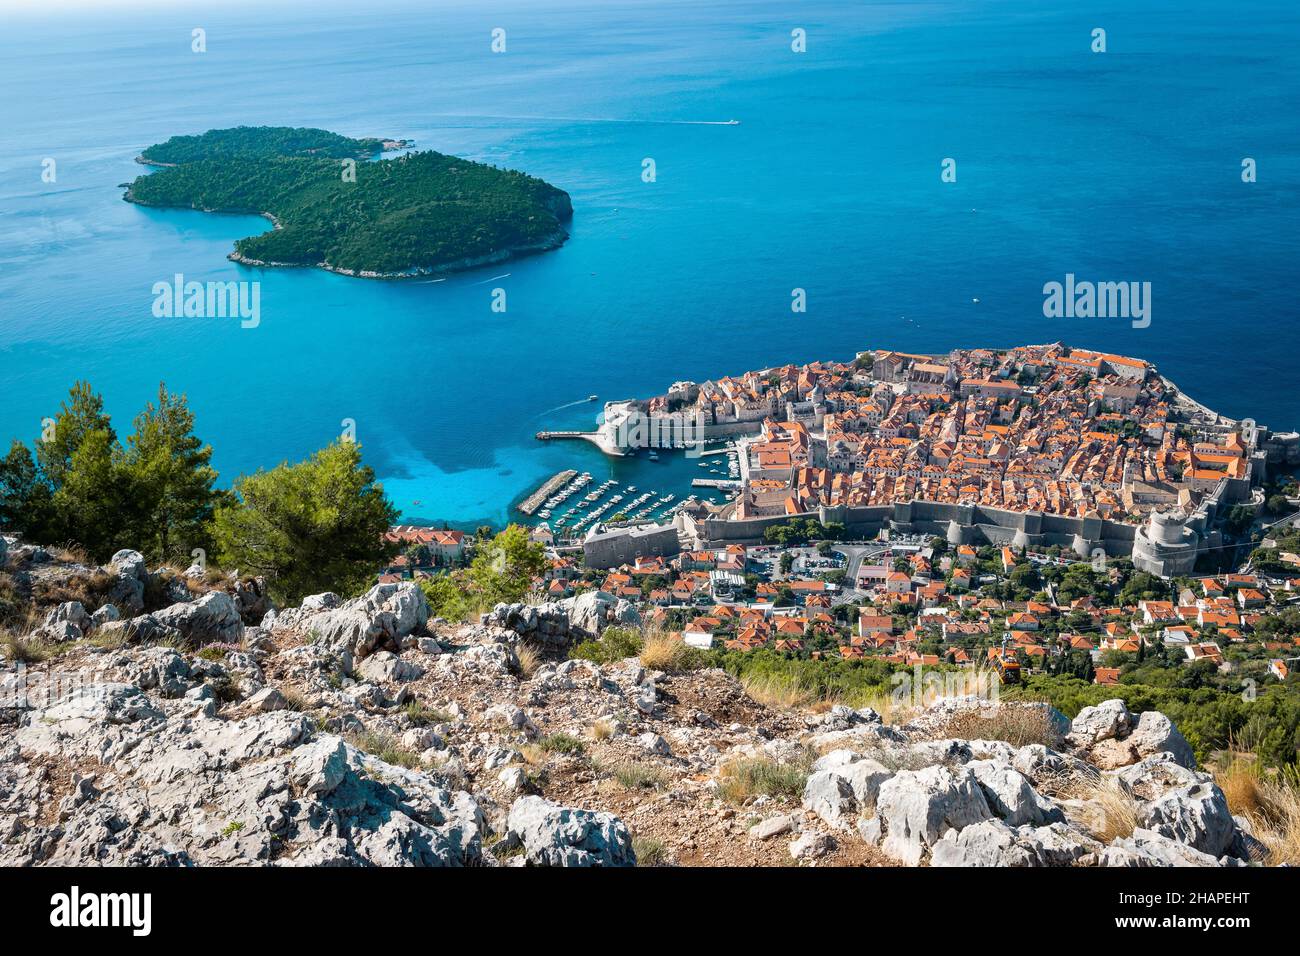 Vista aérea del casco antiguo de Dubrovnik y la isla de Lokrum. Foto de stock